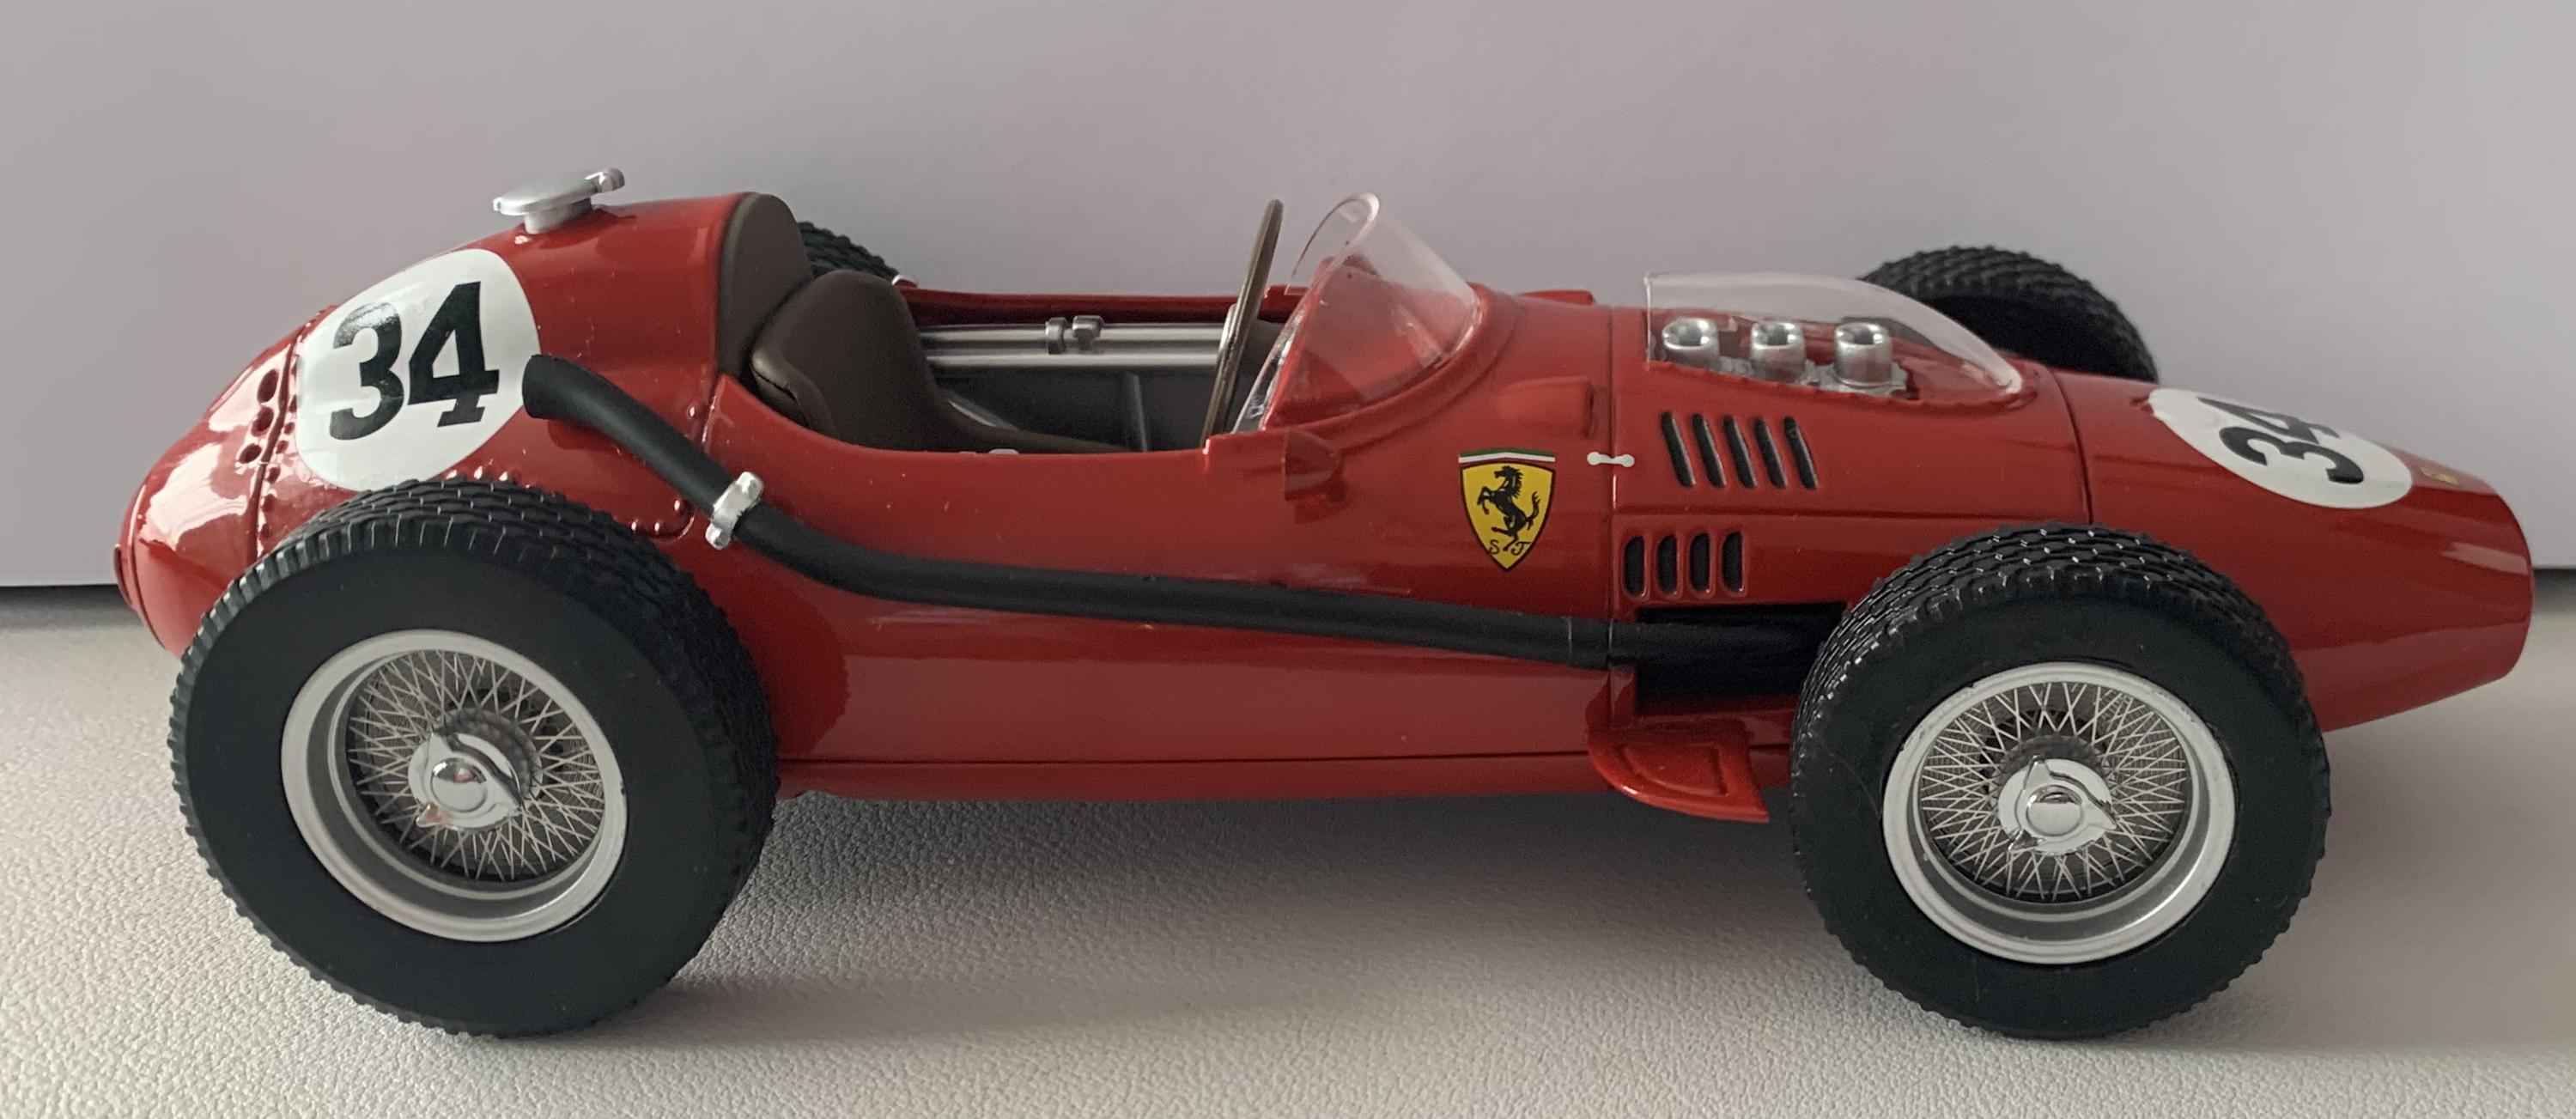 Ferrari Dino 246 car no 34, Monaco F1 GP 1958 2nd Place, Luigi Musso 1:18 scale  diecast model from Classic Model Replicars